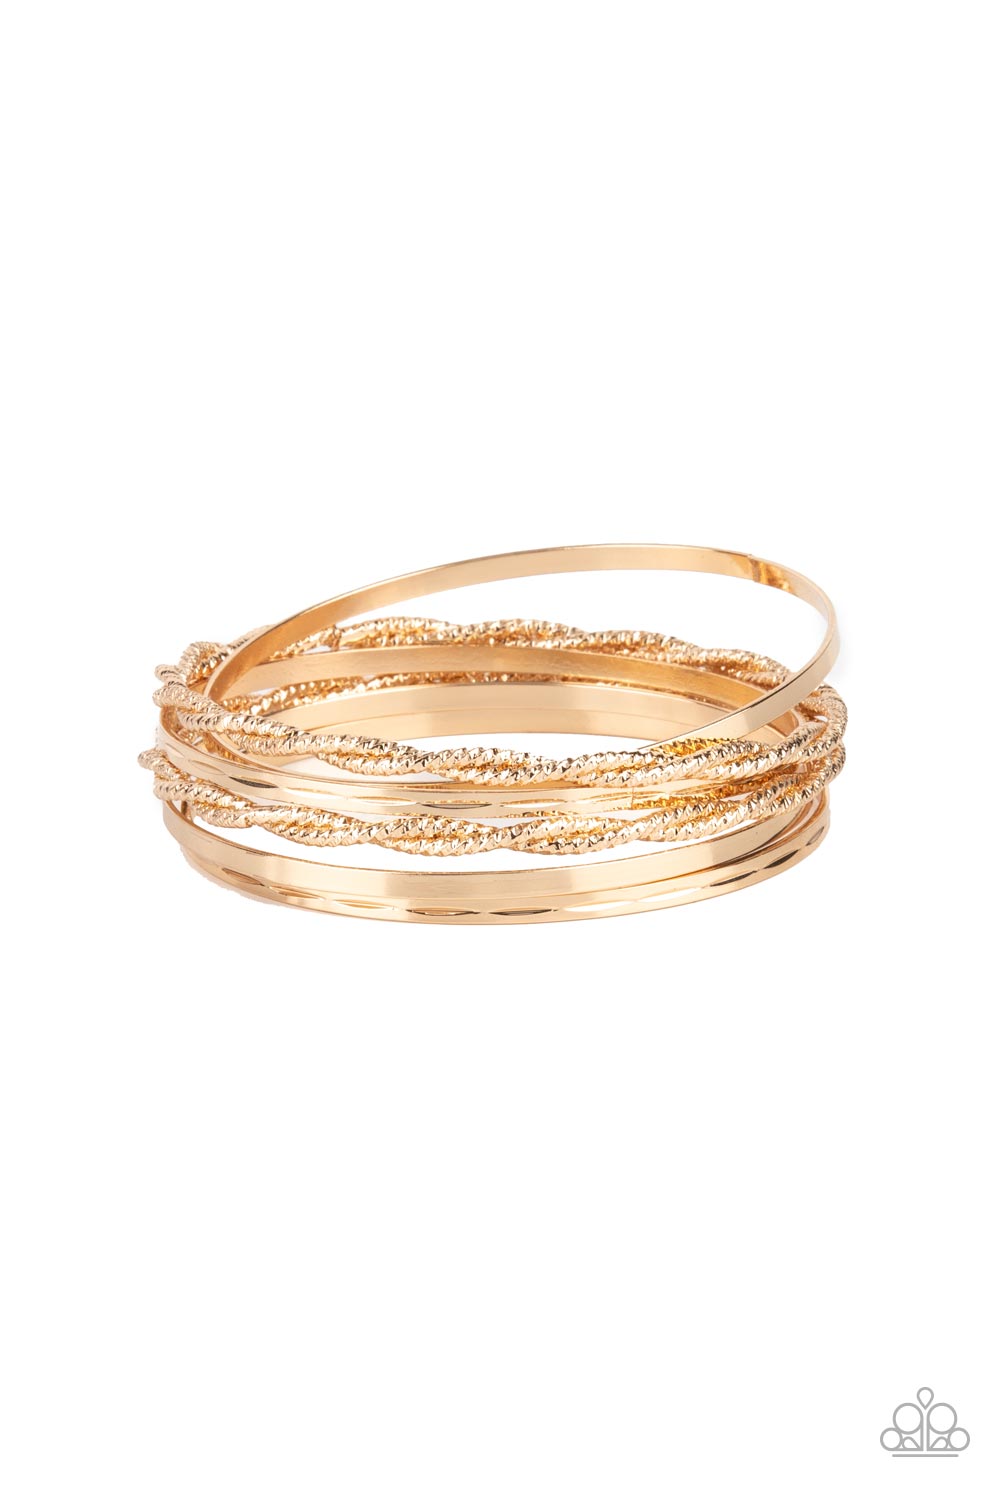 Sensational Shimmer - Gold Bracelet Set - Princess Glam Shop